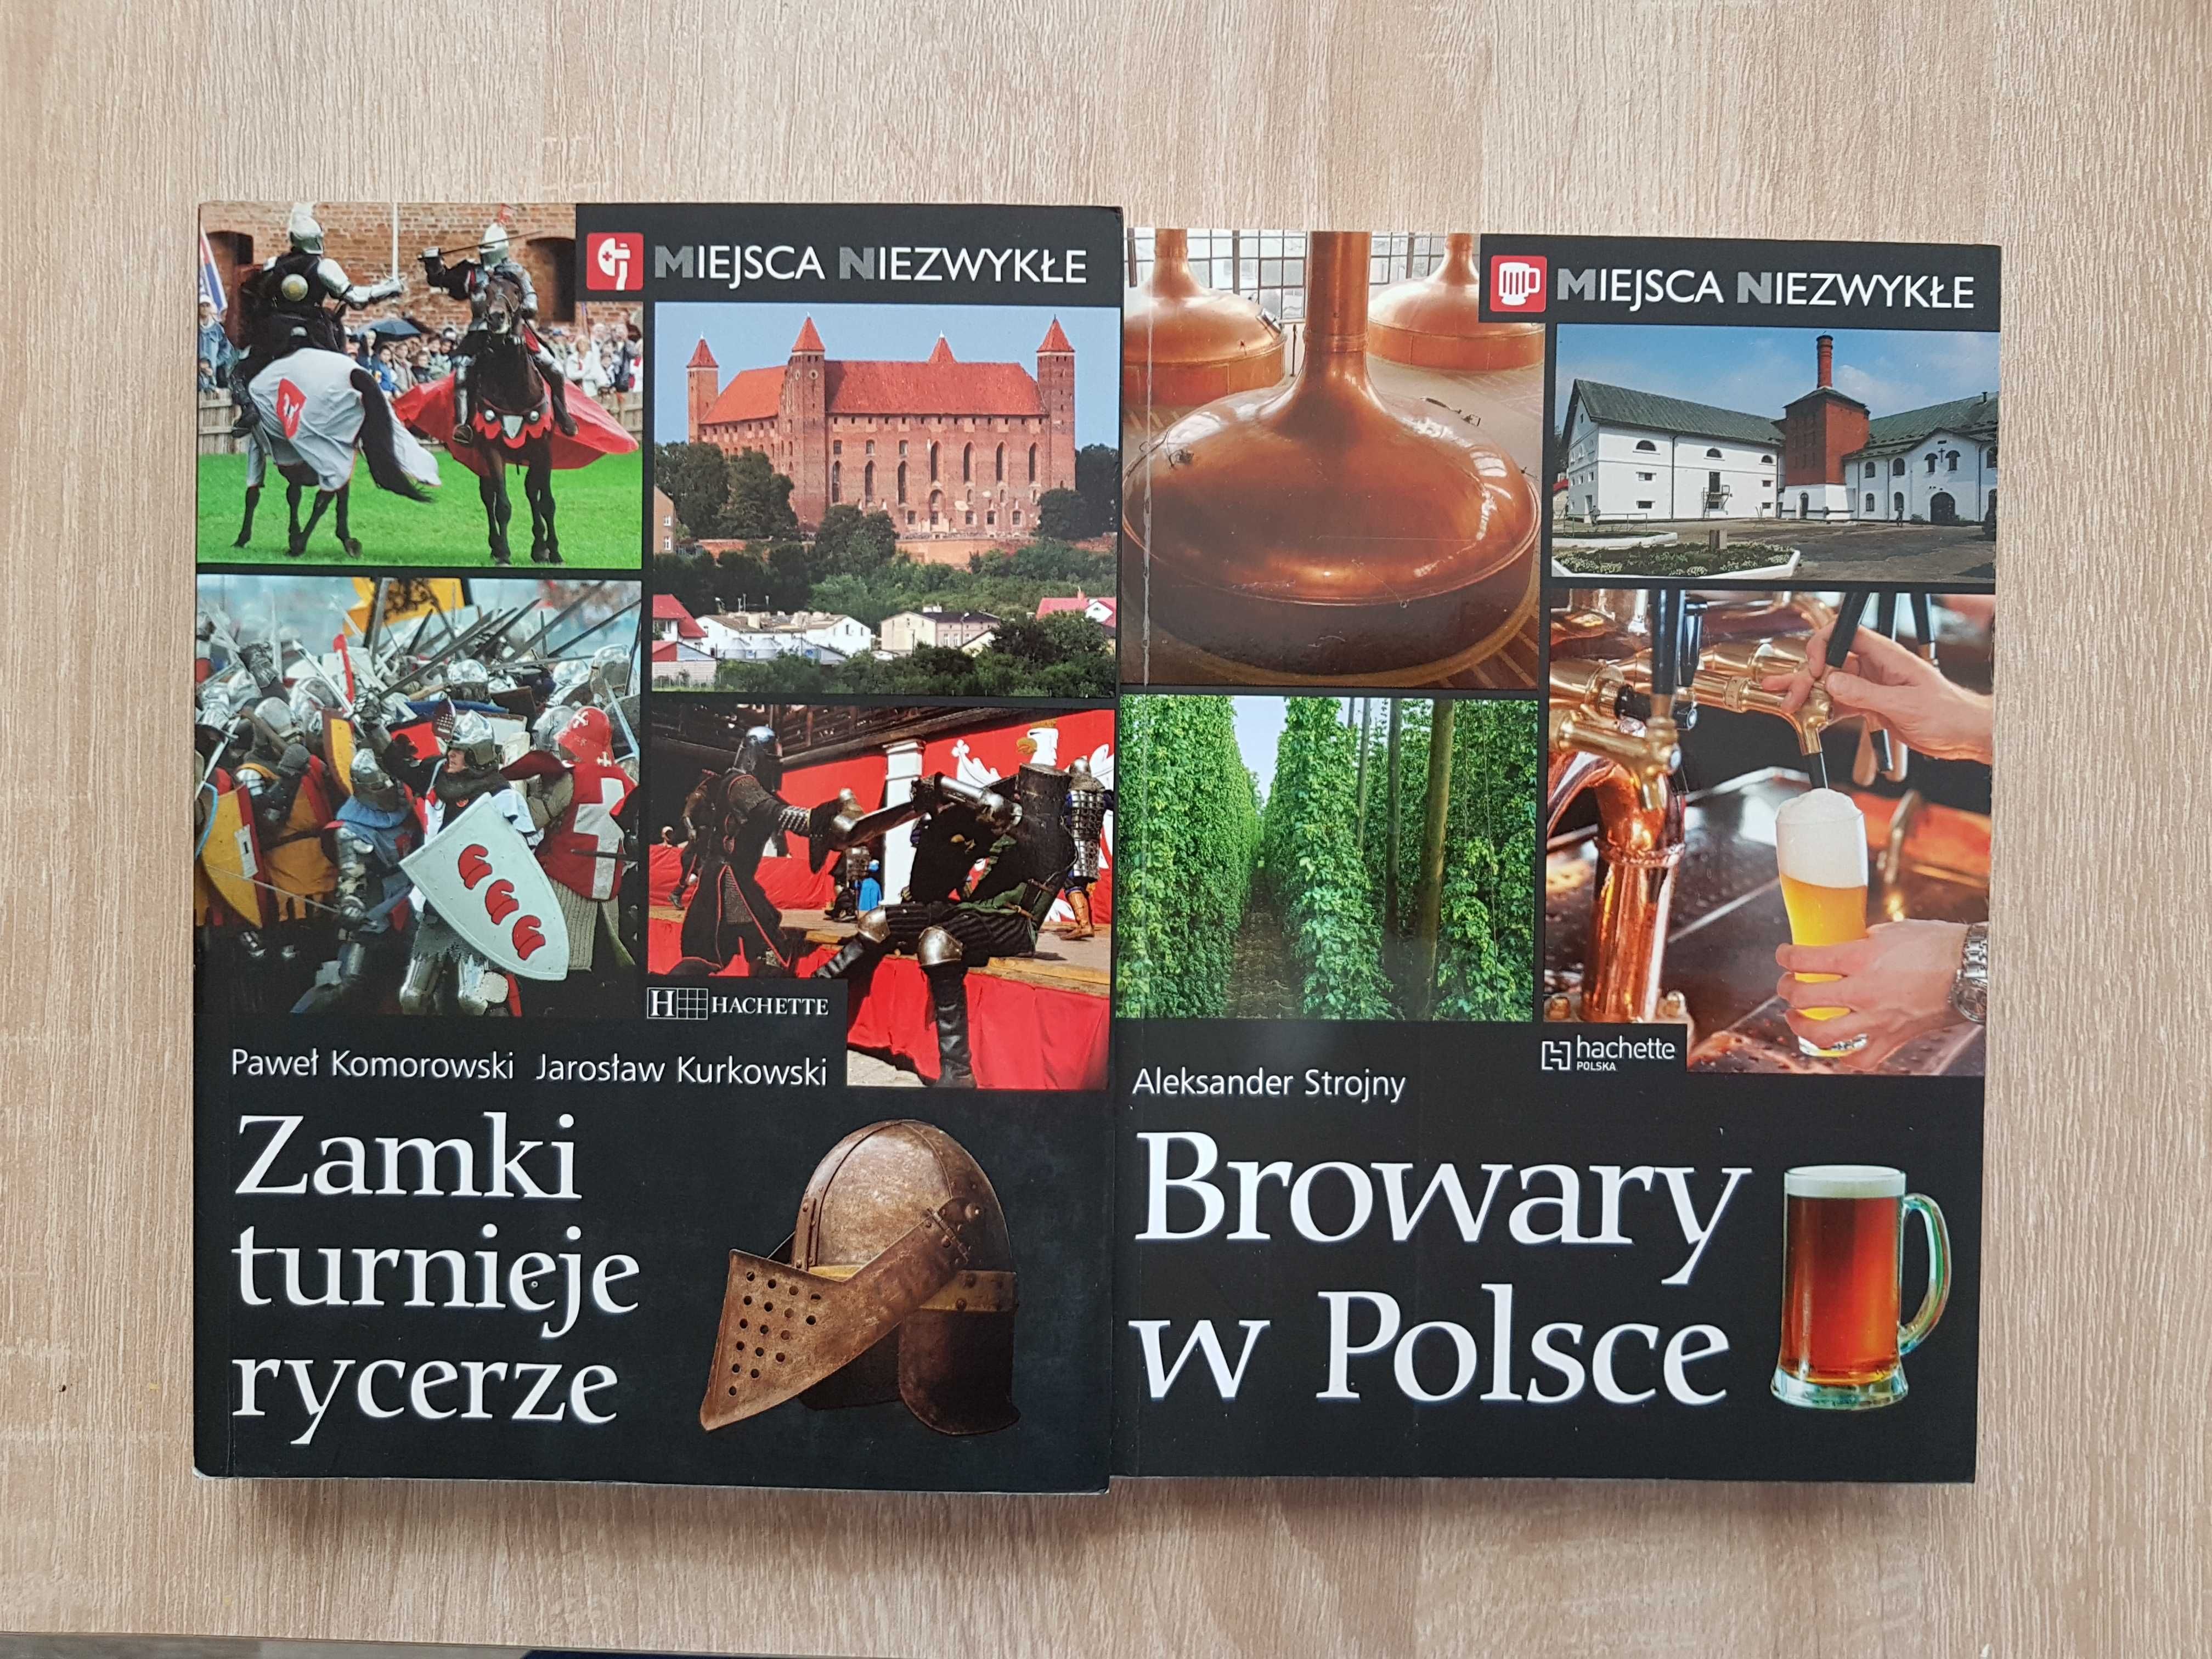 Browary w Polsce, Zamki Turnieje Rycerze - Miejsca Niezwykłe Hachette